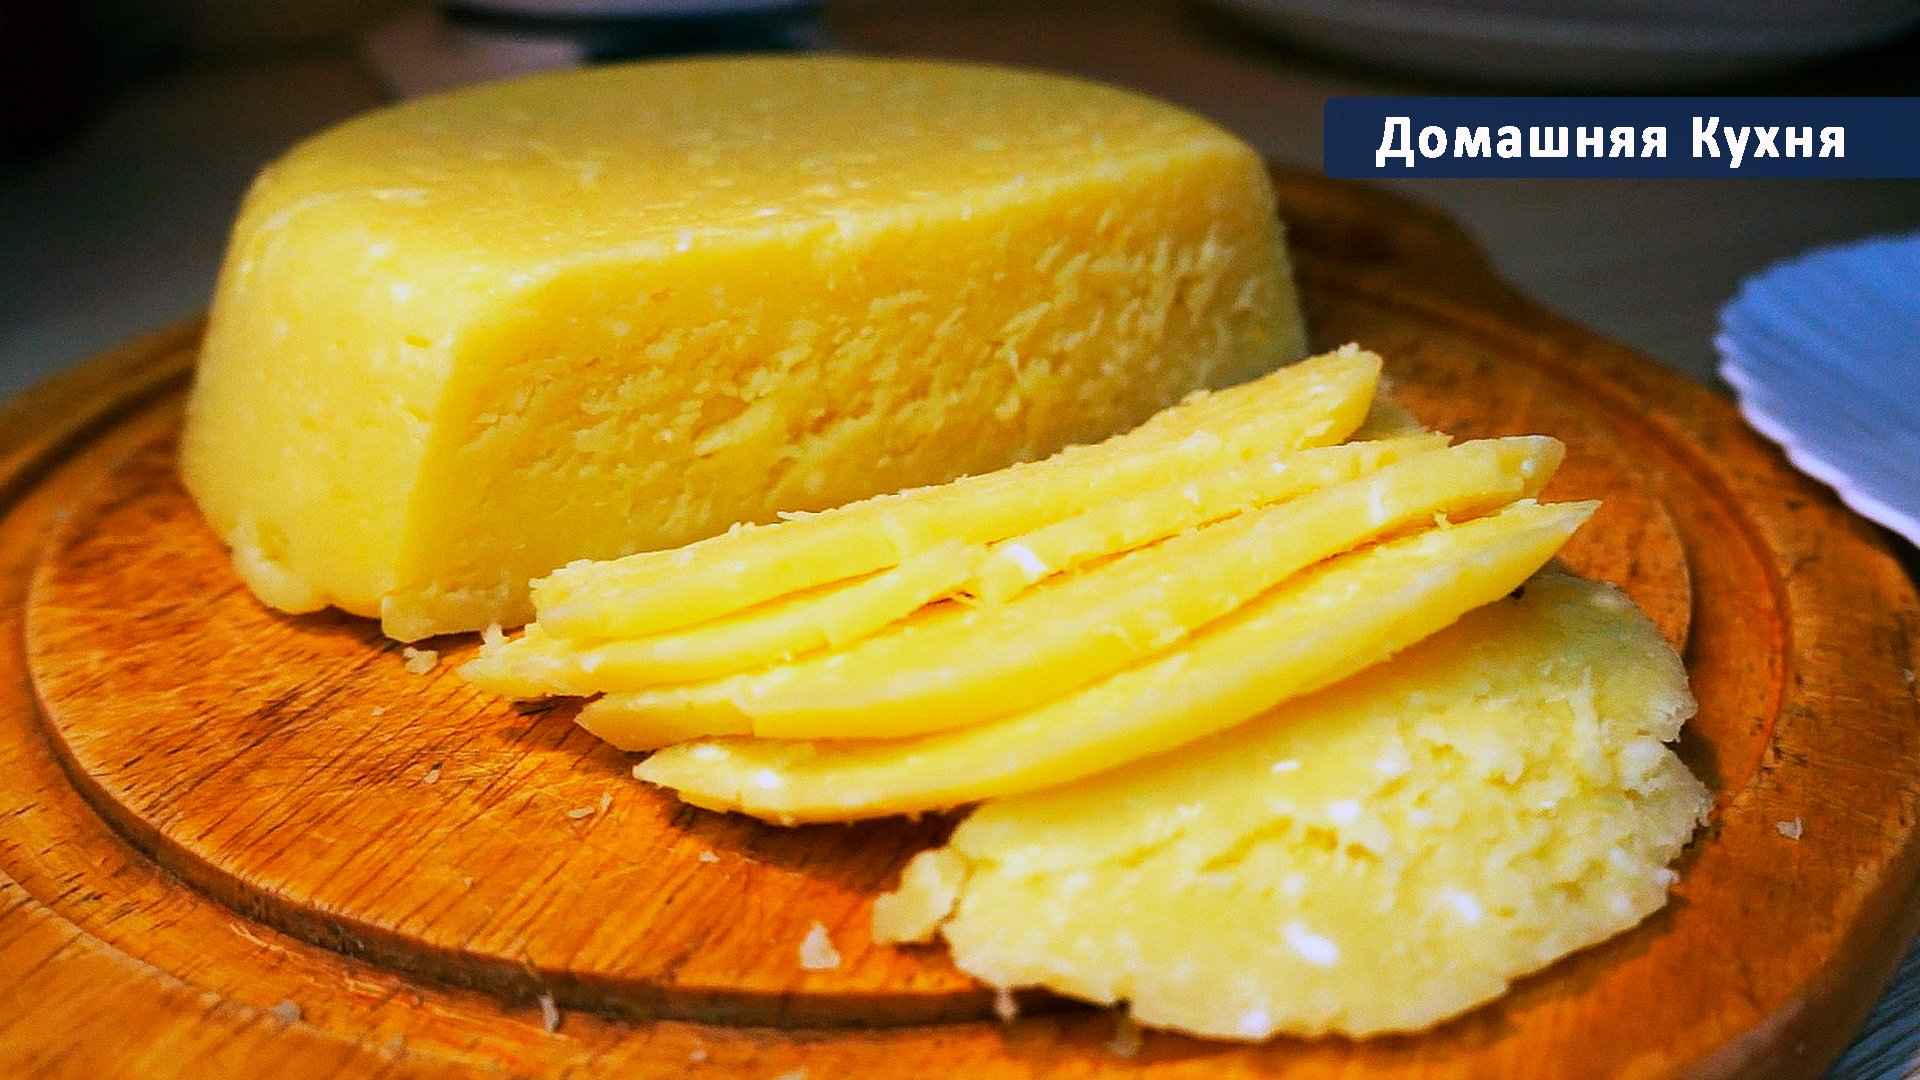 Сварить домашний сыр из творога и молока. Домашний сыр. Сыр из творога. Домашний сыр из творога. Домашний твердый сыр.